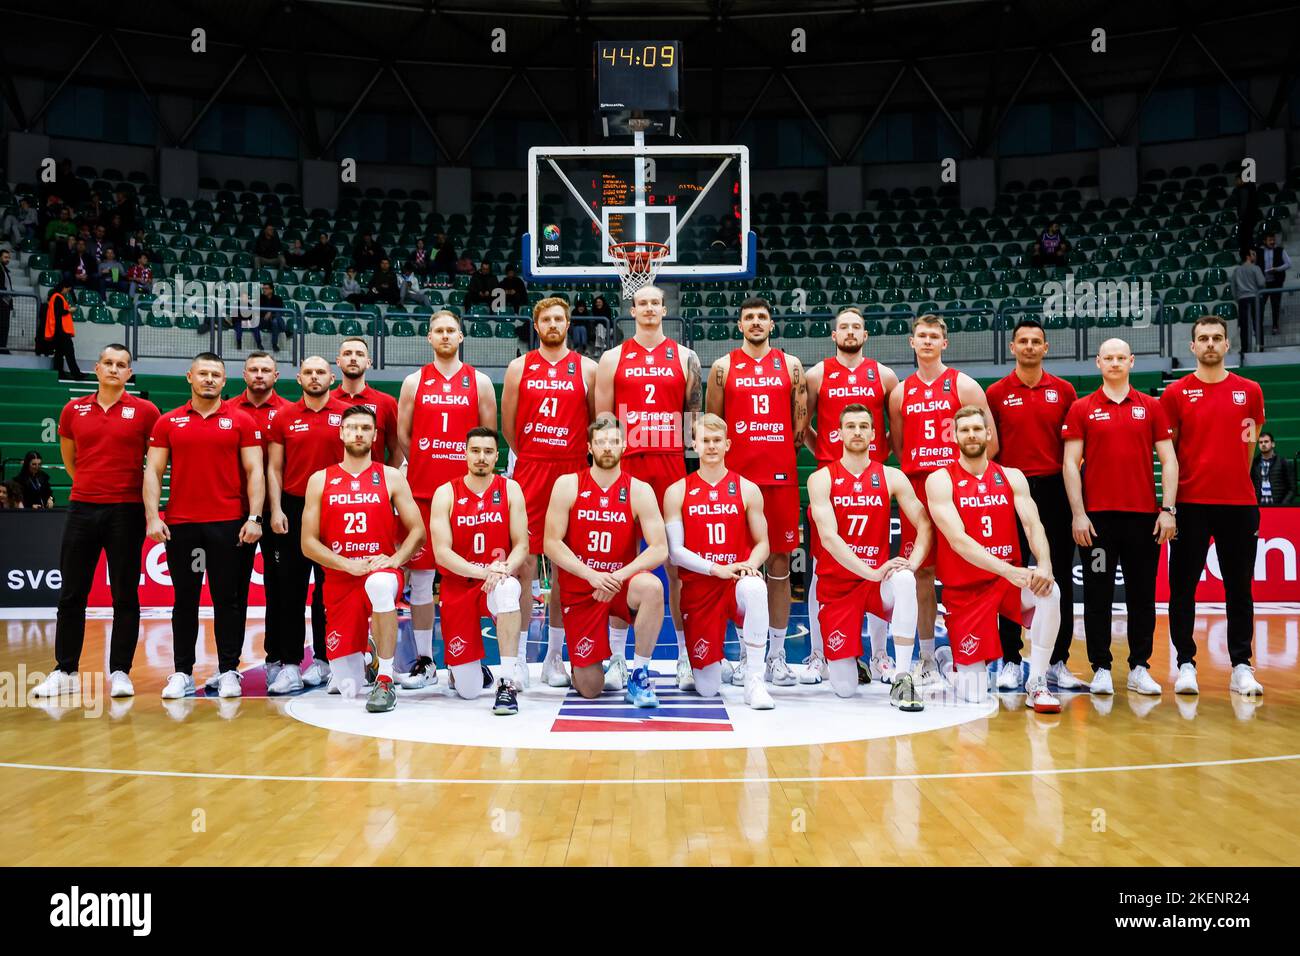 November 13, 2022, Zagrzeb, Warsaw, Poland: Zagrzeb, 13.11.2022.KOSZYKOWKA  KADRA REPREZENTACJA POLSKI MECZ Chorwacja - Polska.POLISH NATIONAL TEAM  BASKETBALL POLAND FIBA GAME CROATIA v POLAND.NZ zdjecie grupowe team photo  grupowka , trener coach